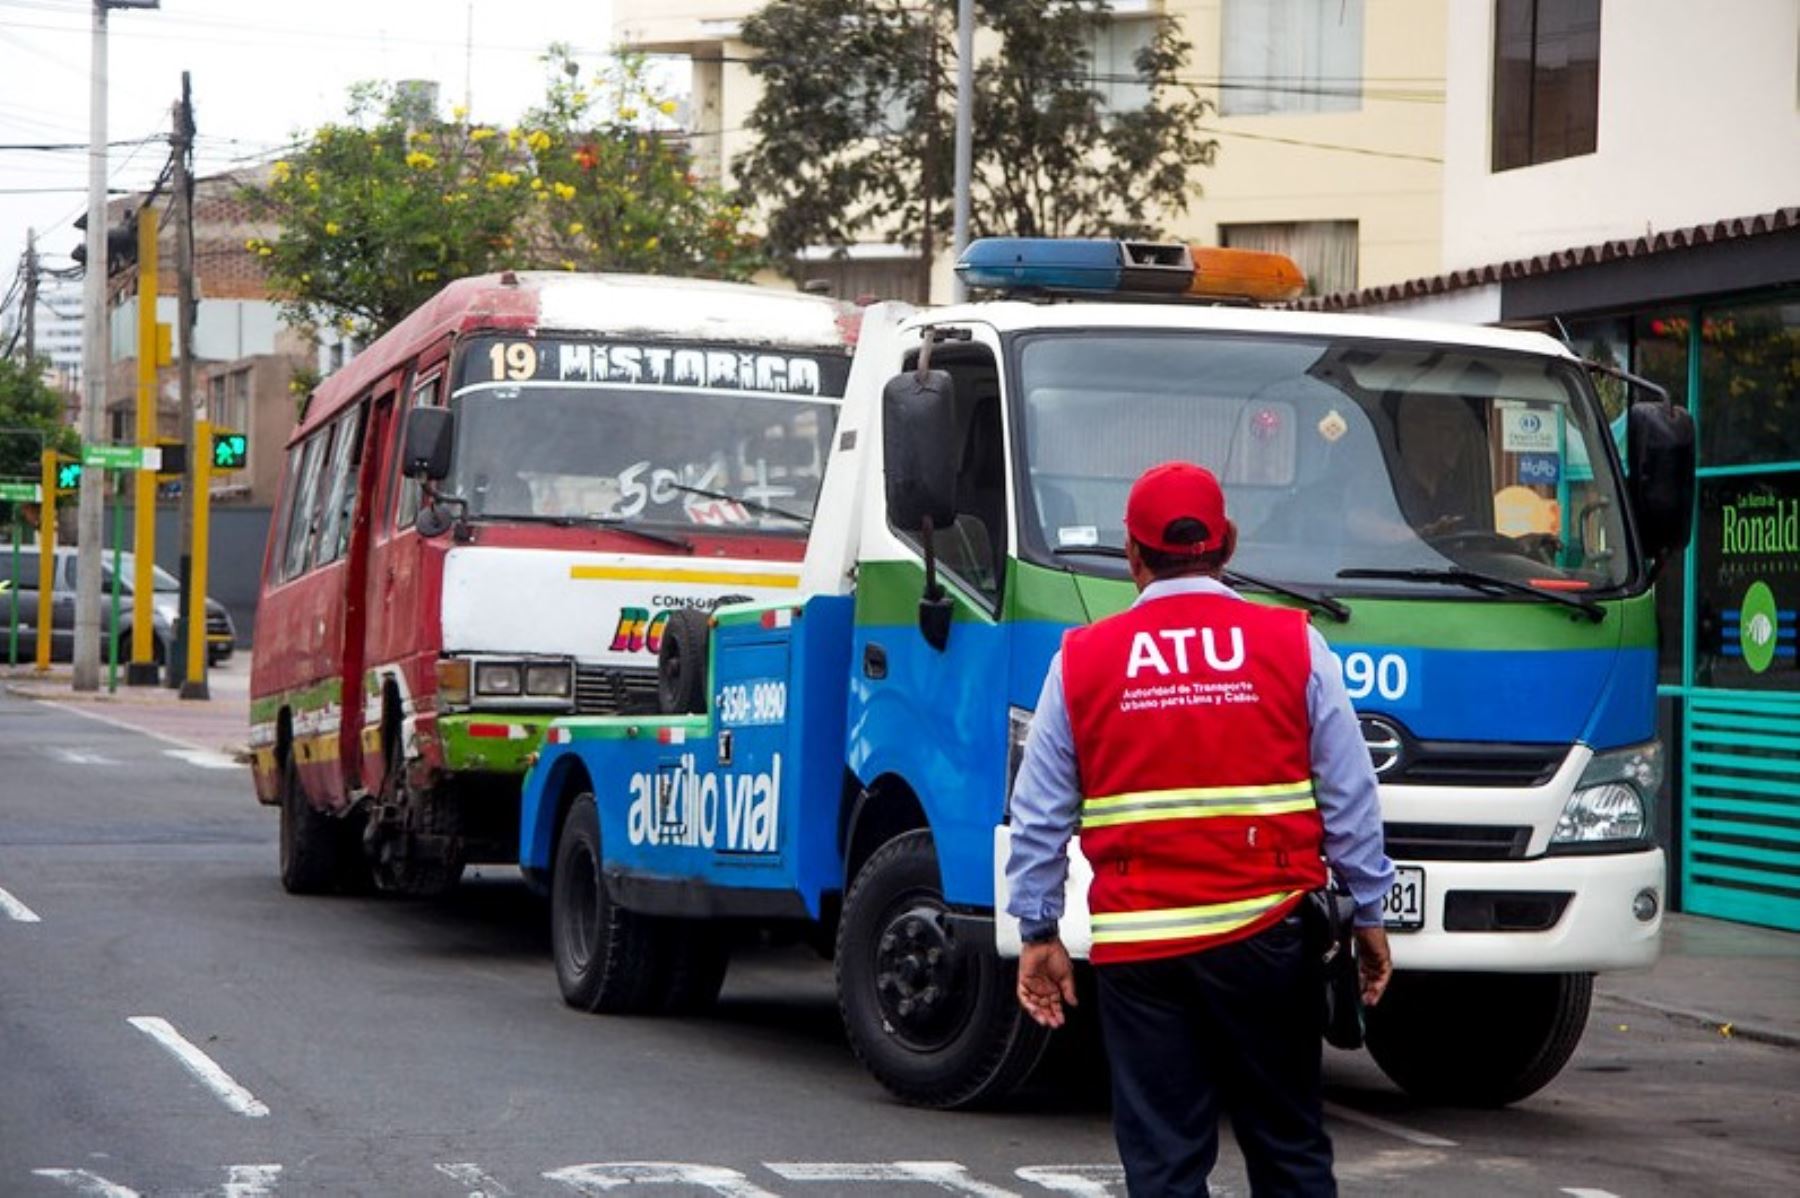 ATU y Miraflores envían al depósito seis cúster que debían más de S/ 1 millón en multas. Foto: ANDINA/Difusión.